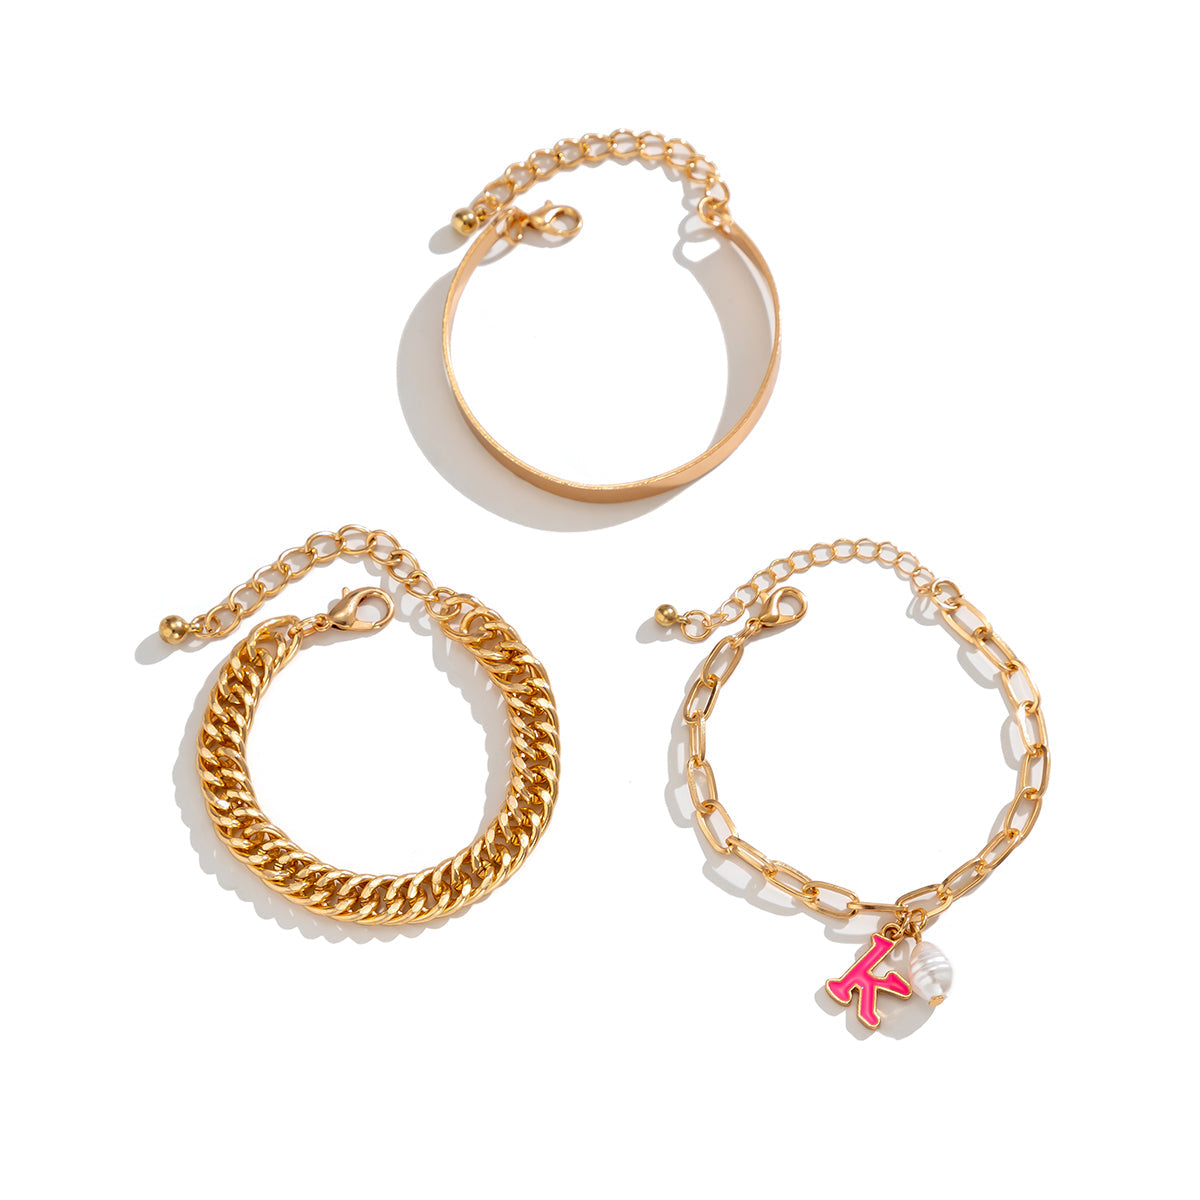 Pearl & 18K Gold-Plated Letter K Bracelet Set